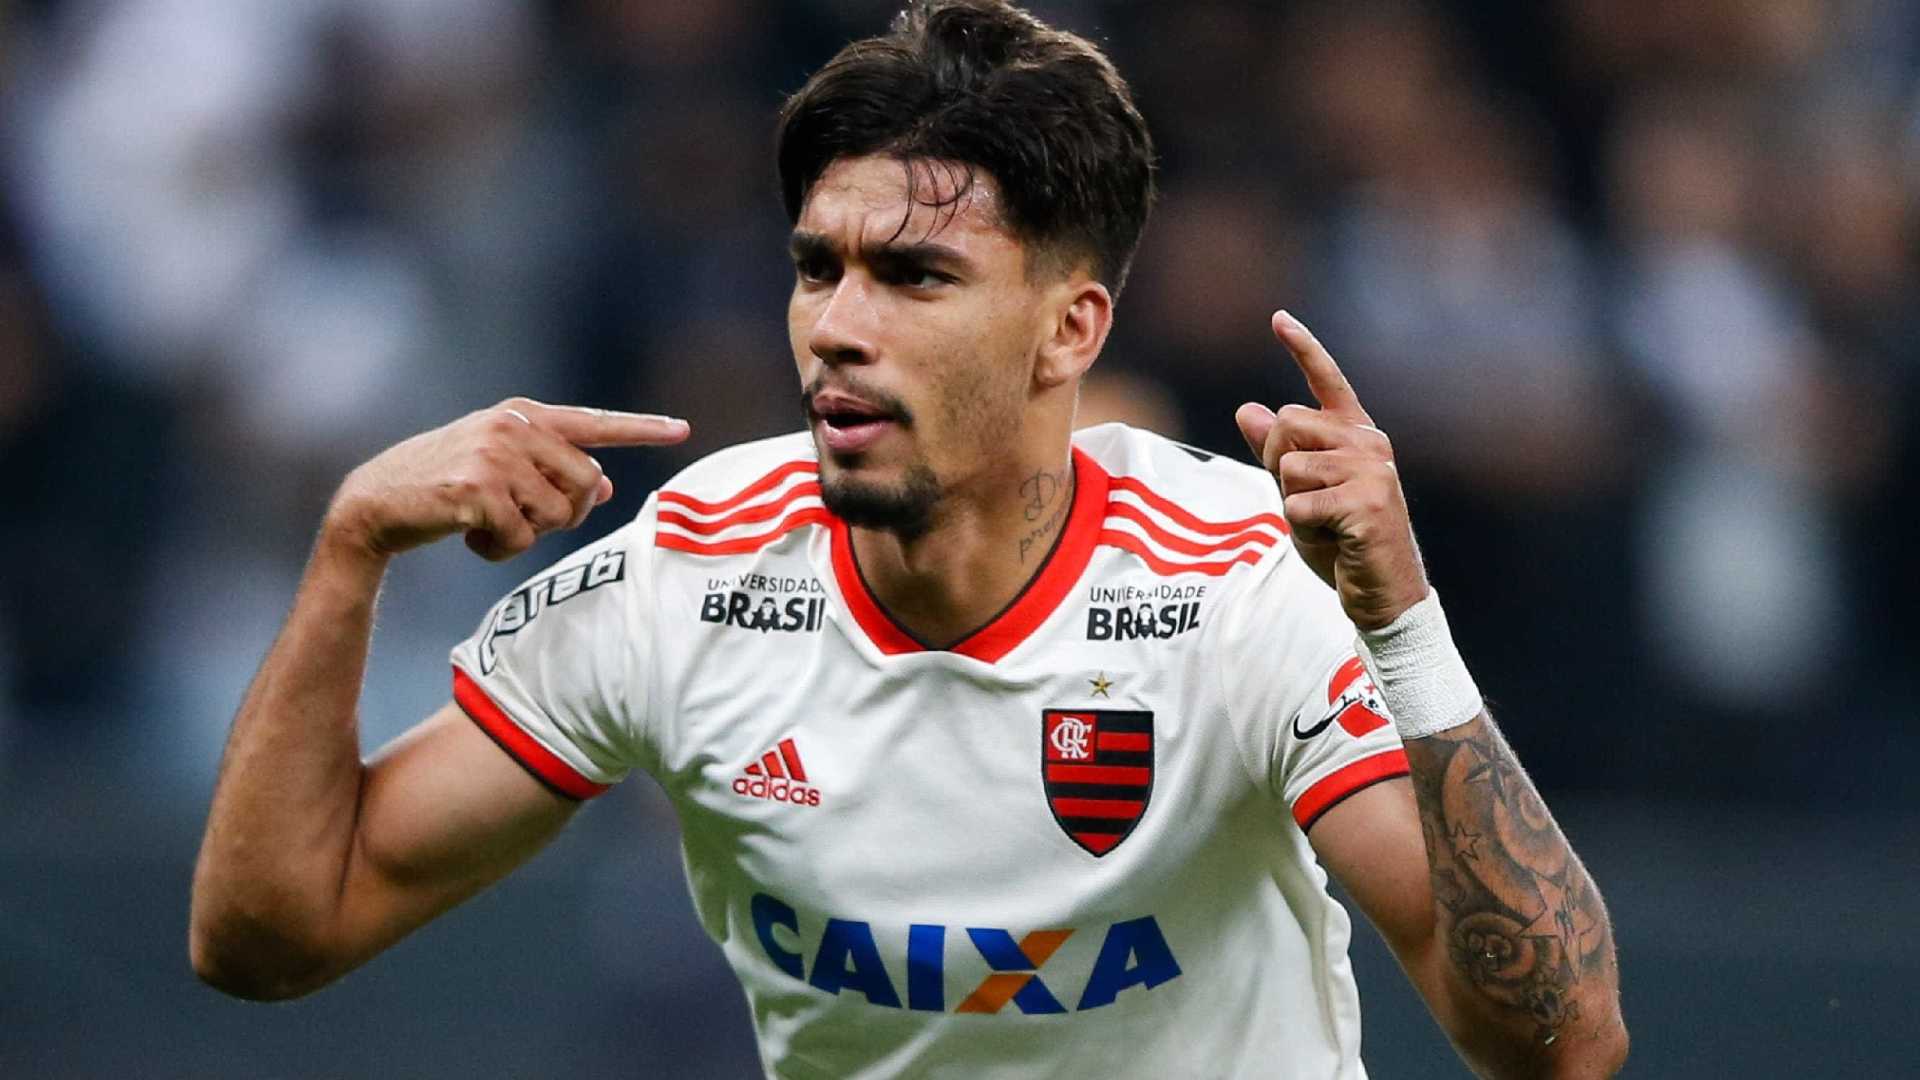 Saiba o que influenciou a saída de Paquetá do Flamengo